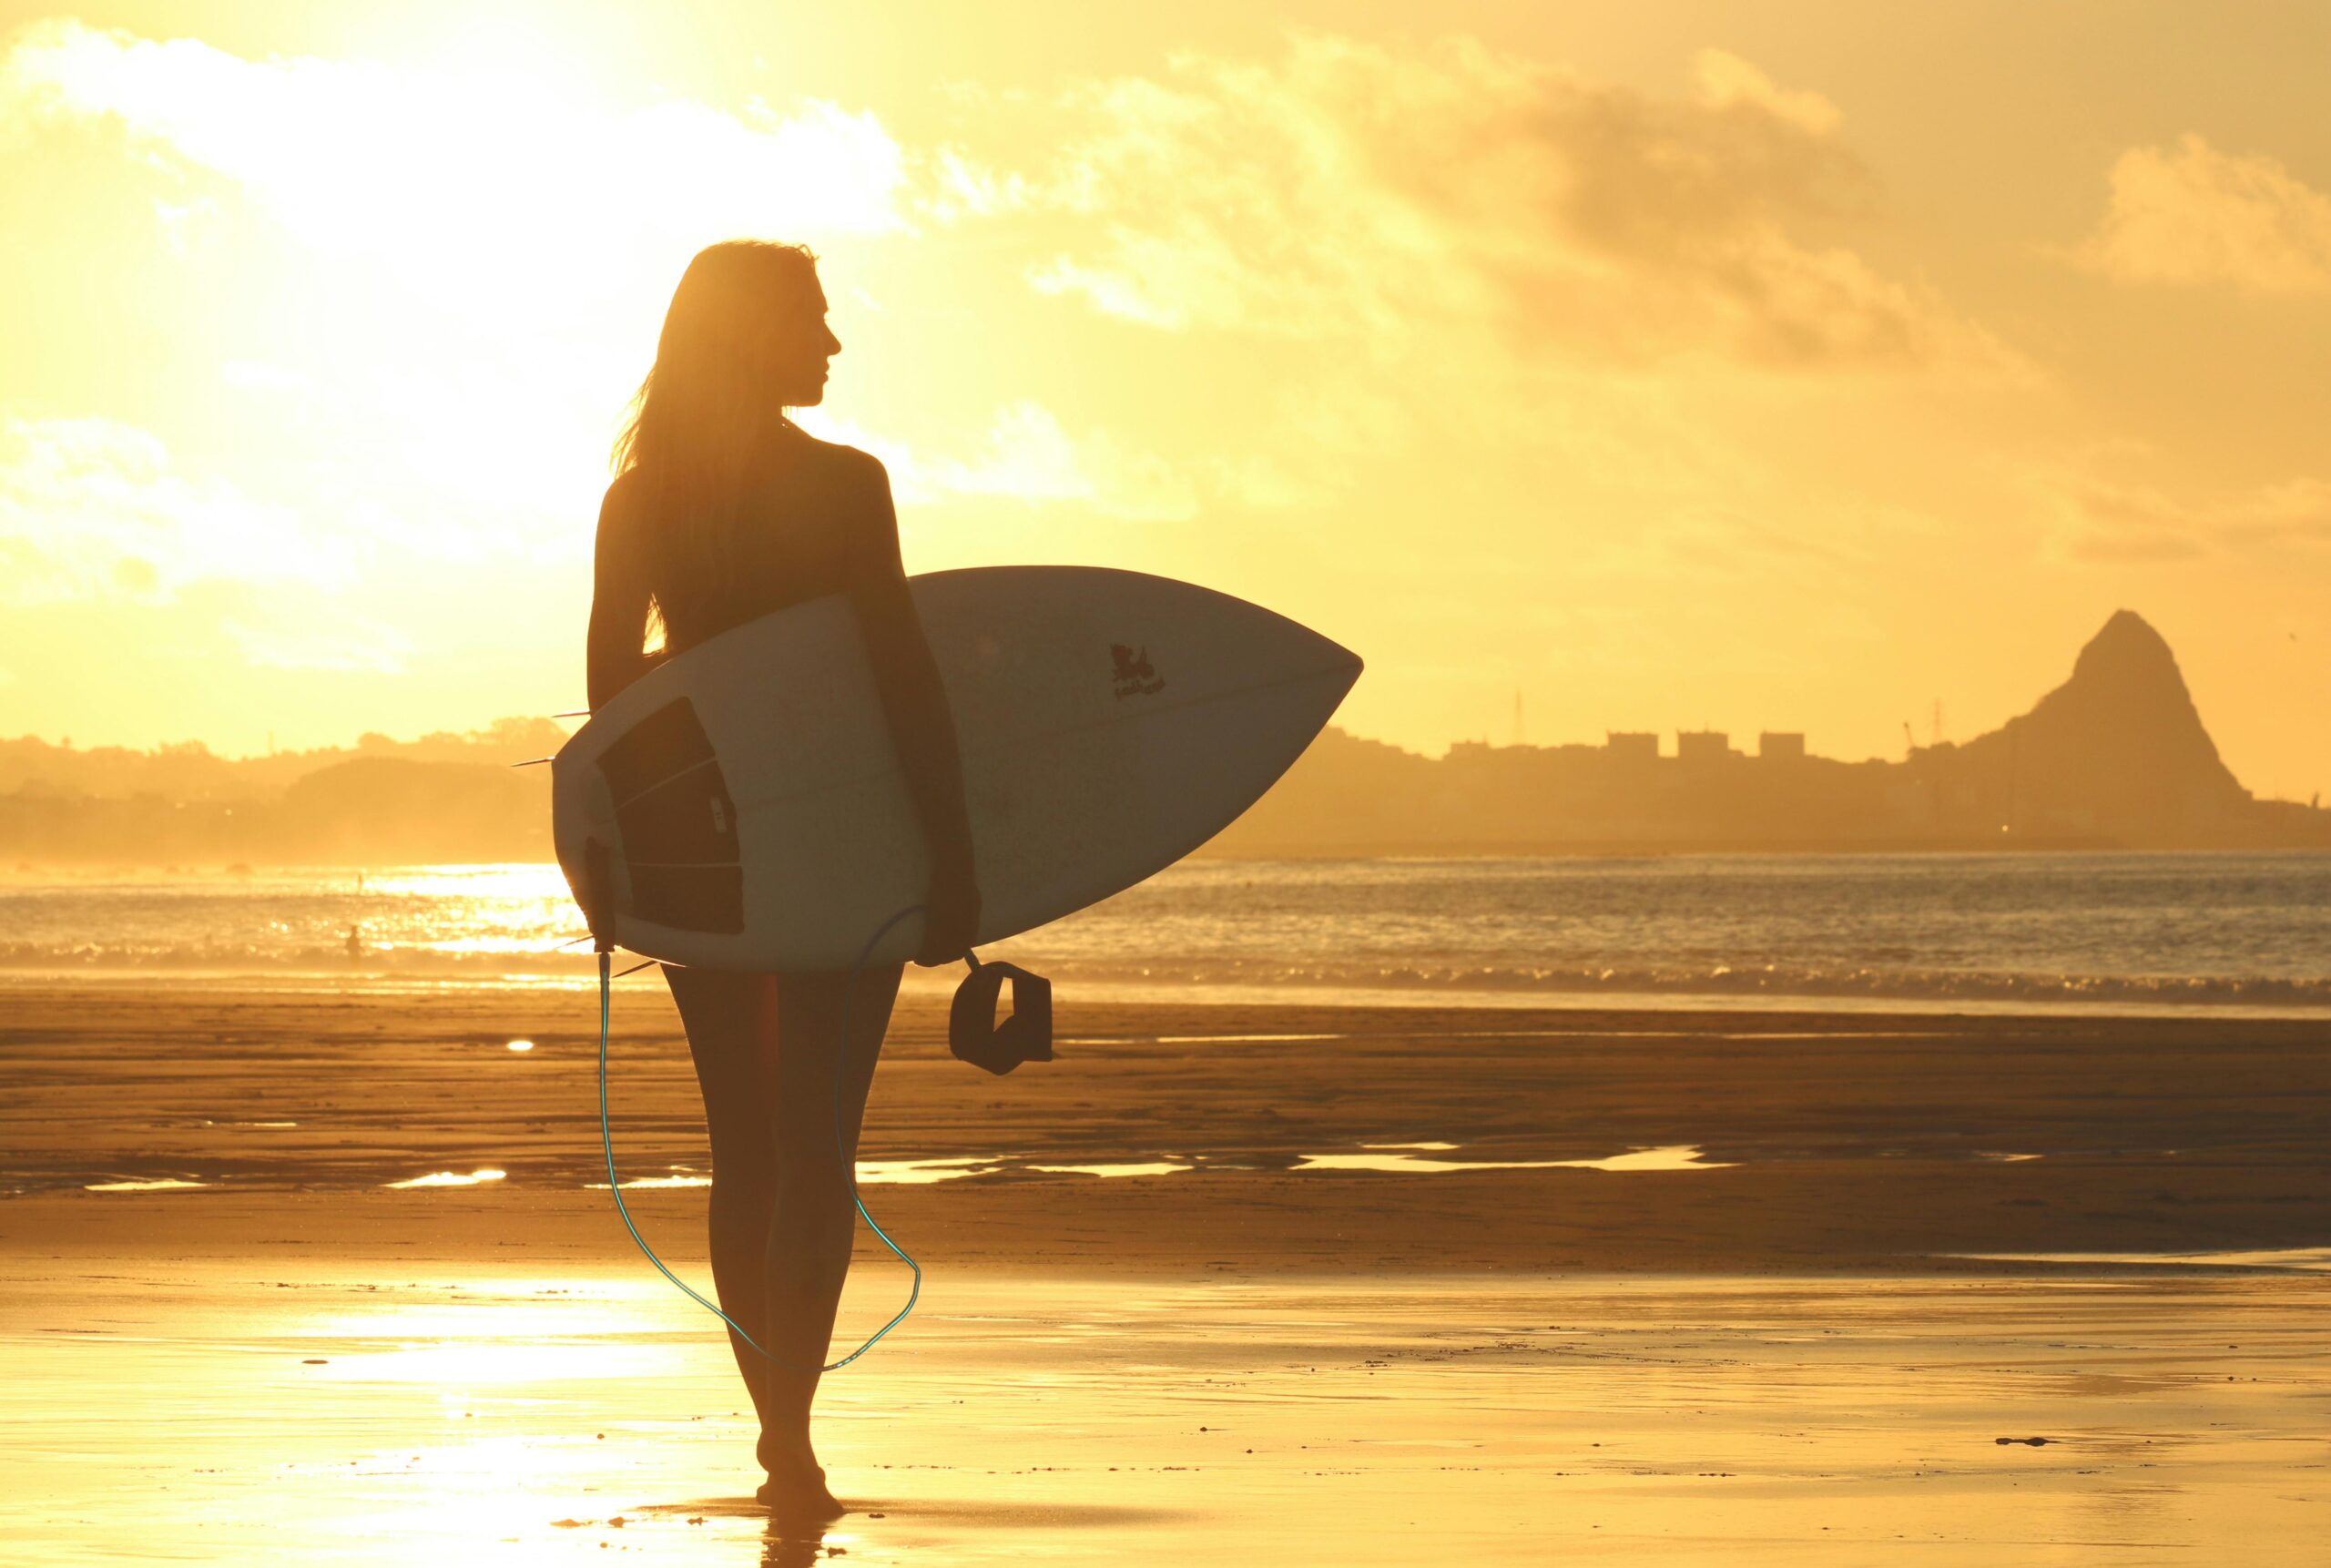 Leren surfen tijdens een gezellig surfkamp